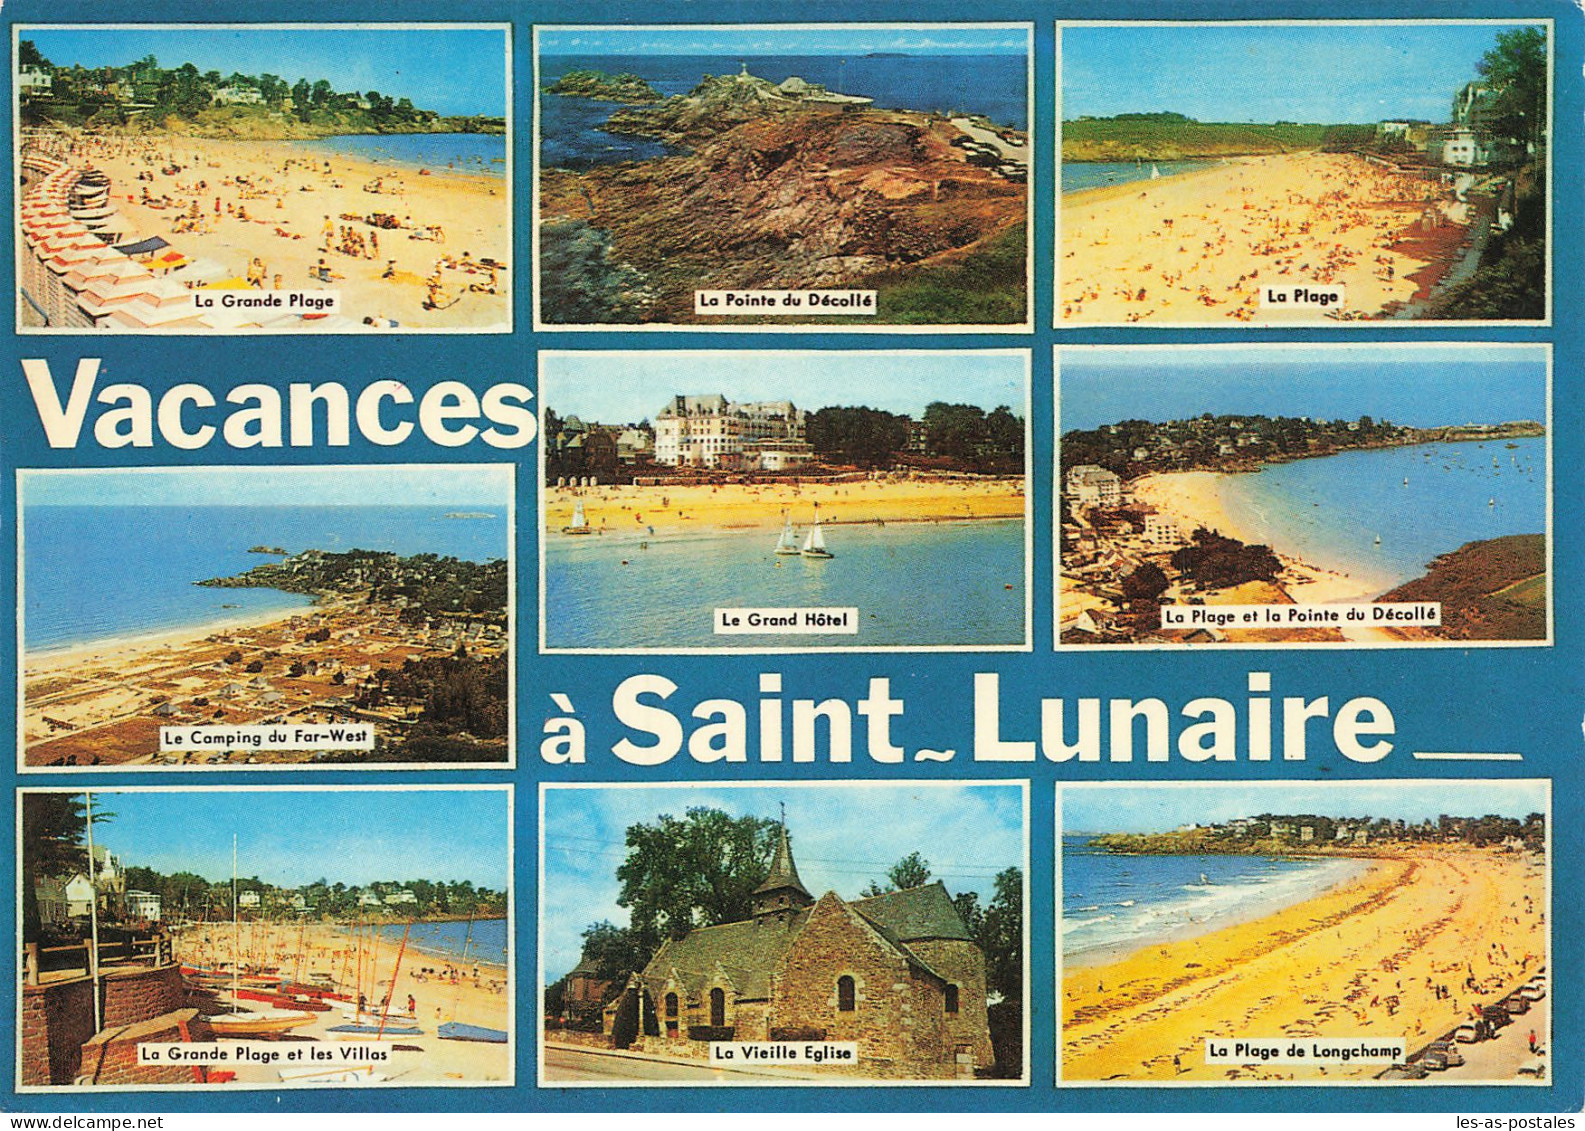 35 SAINT LUNAIRE - Saint-Lunaire